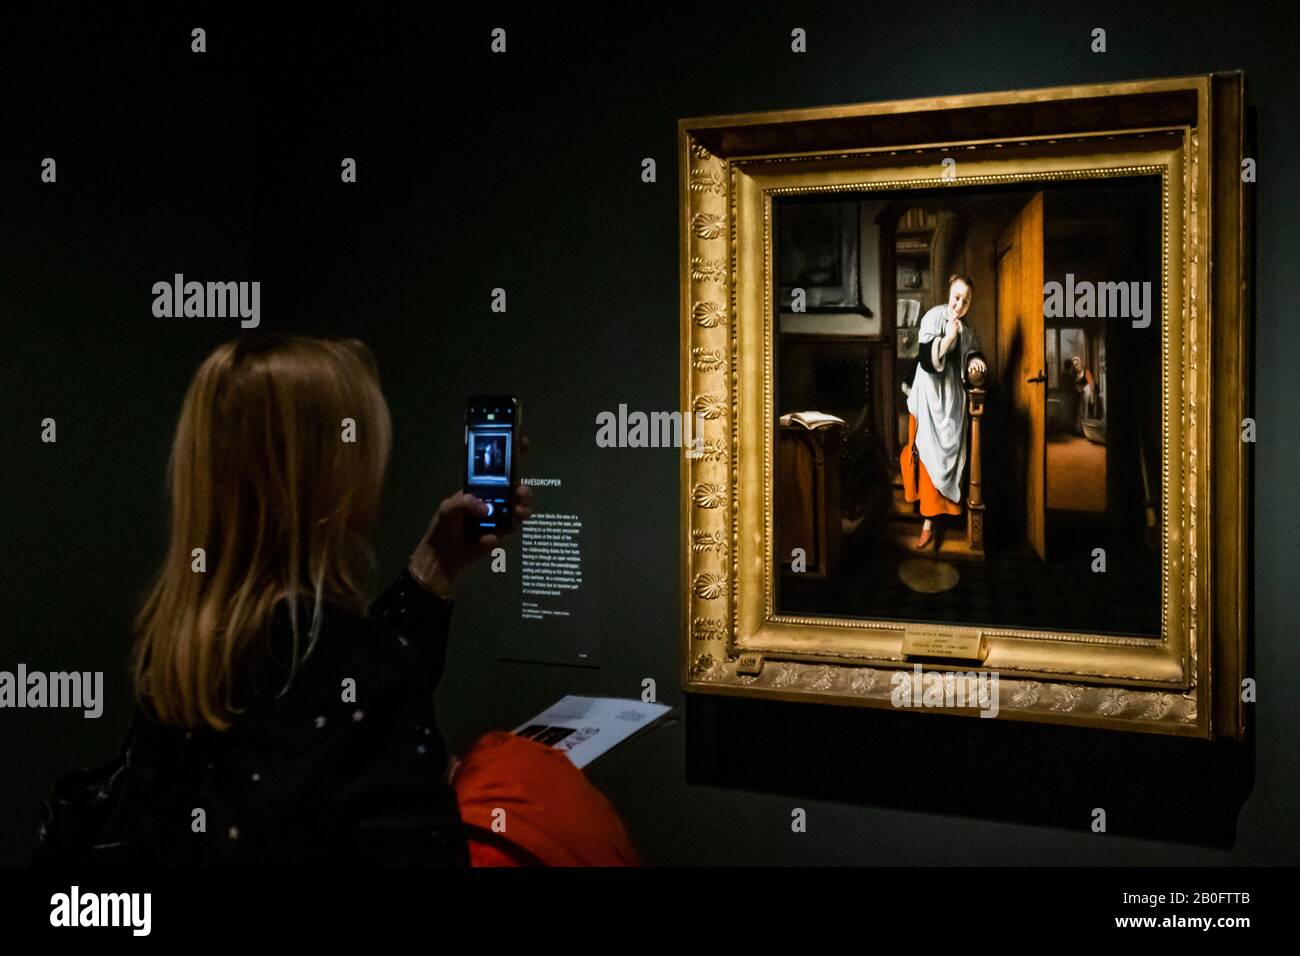 Londra, Regno Unito. 20 Feb, 2020. L'Eavesdropper, 1656 - Nicolaes Maes: Maestro olandese dell'età dell'oro una nuova mostra alla Galleria Nazionale. Credito: Guy Bell/Alamy Live News Foto Stock